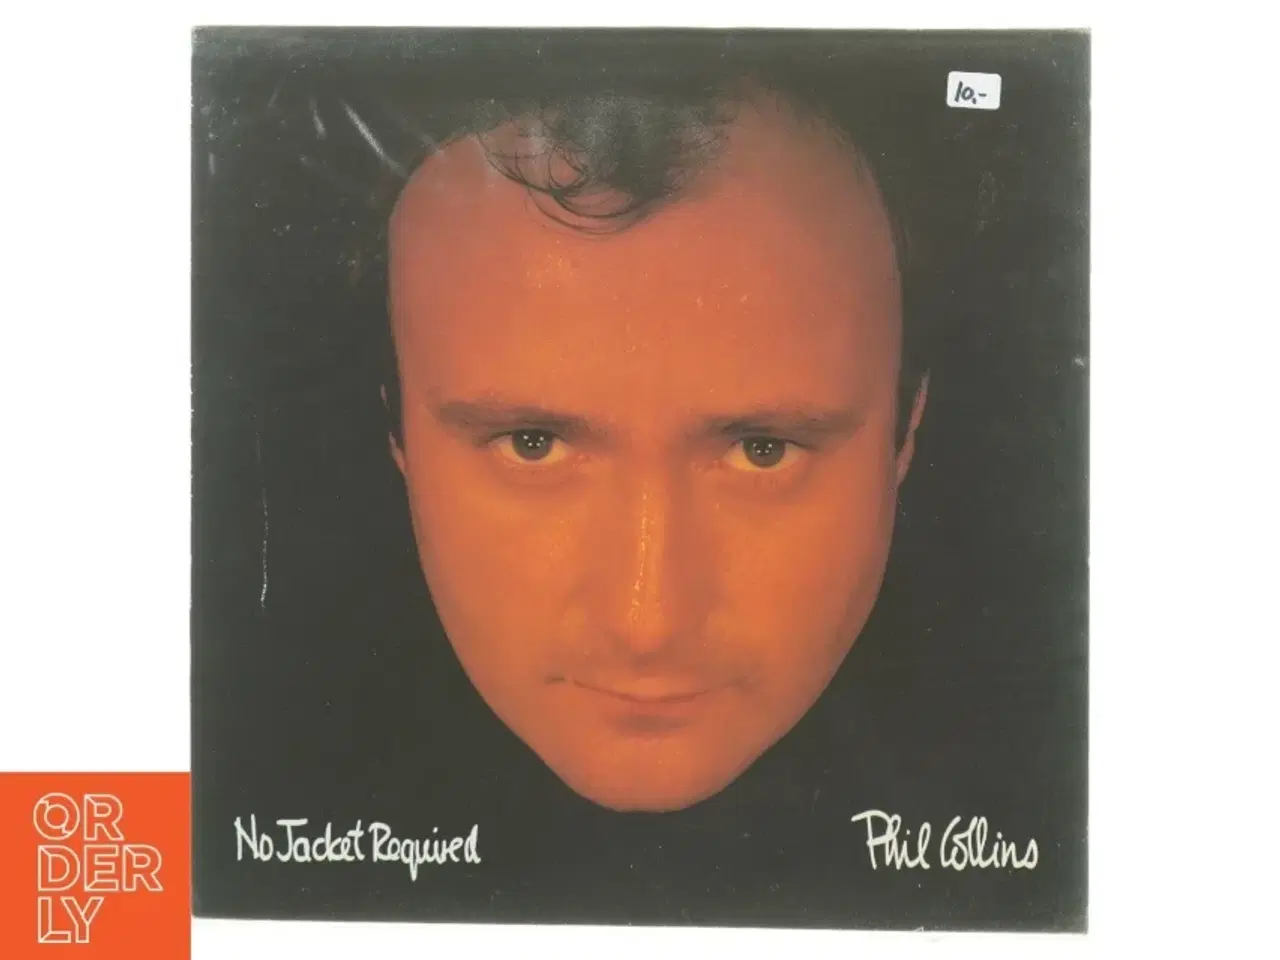 Billede 1 - Phil Collins No Jacket Required  Vinyl LP fra Virgin Records (str. 31 x 31 cm)